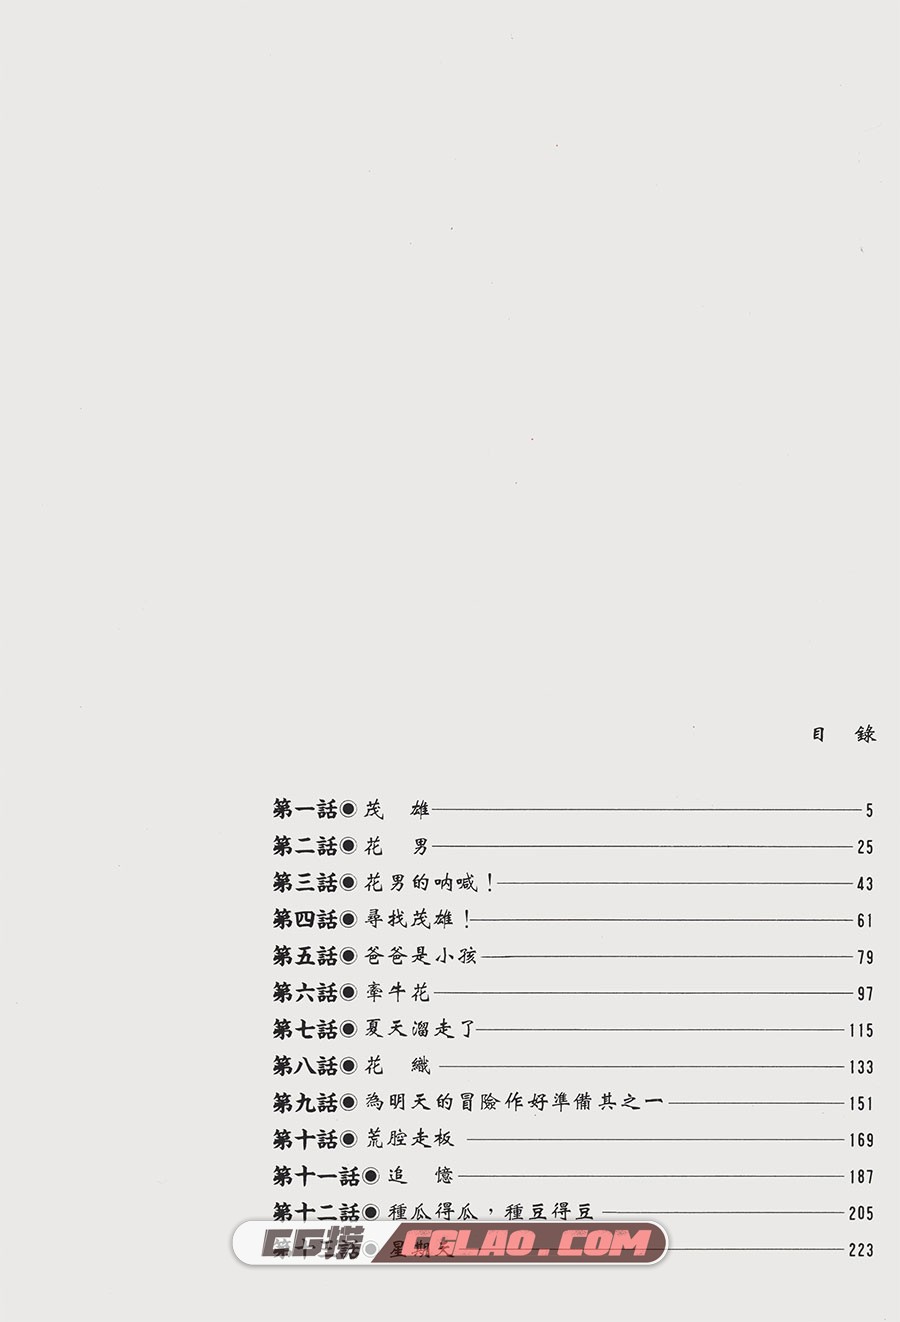 花男 松本大洋 1-3卷 漫画完结全集下载 百度网盘,_FM01-_0002.jpg